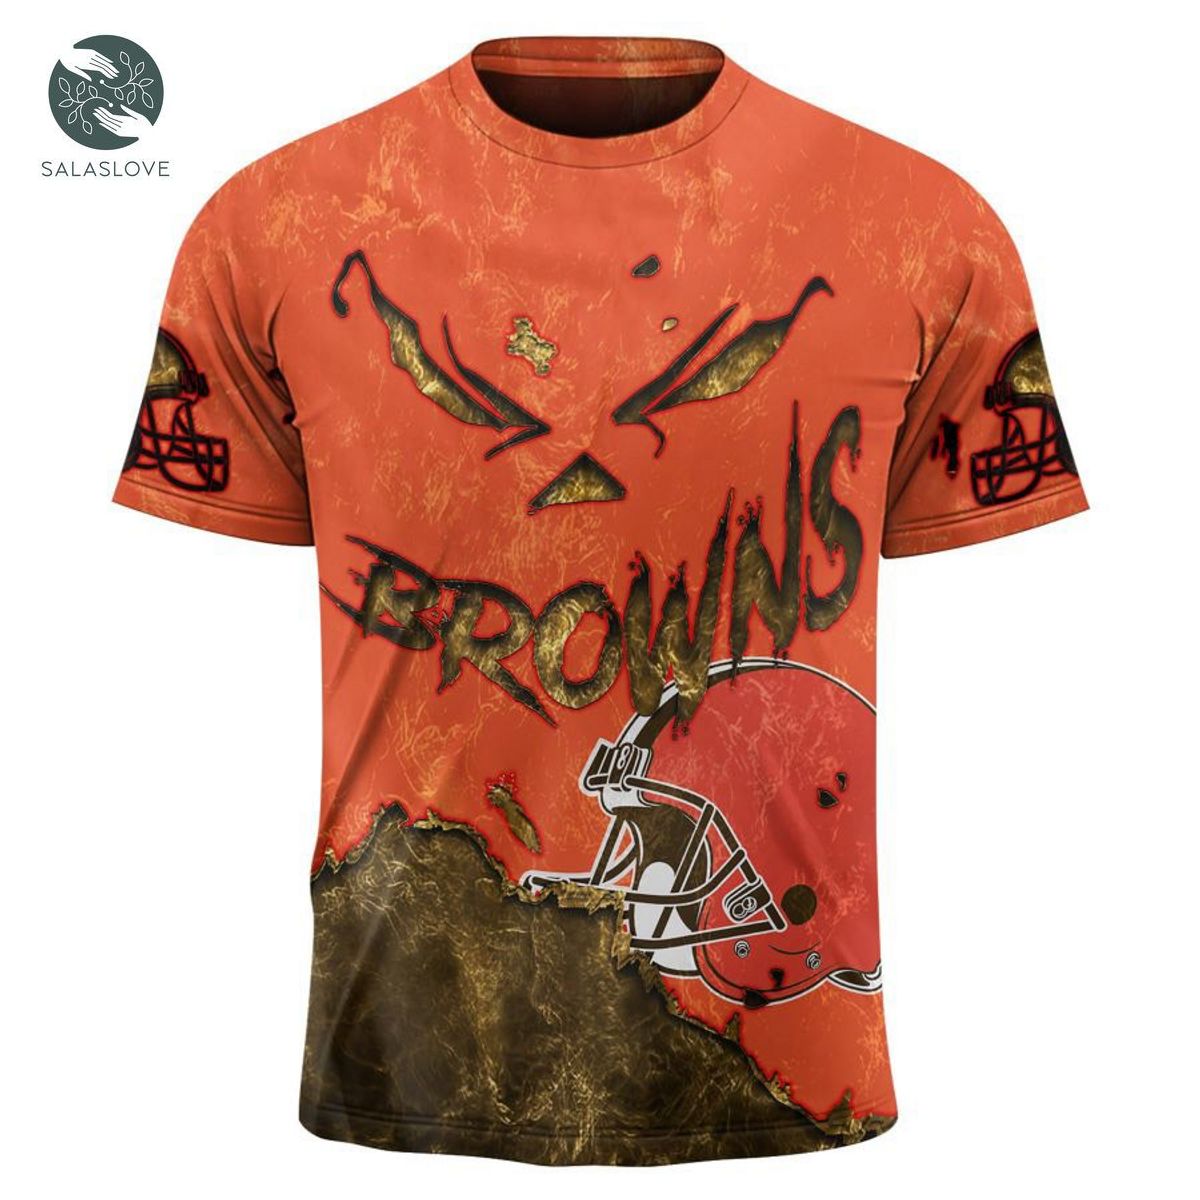 Cleveland Browns T-shirt 3D devil eyes gift for fans